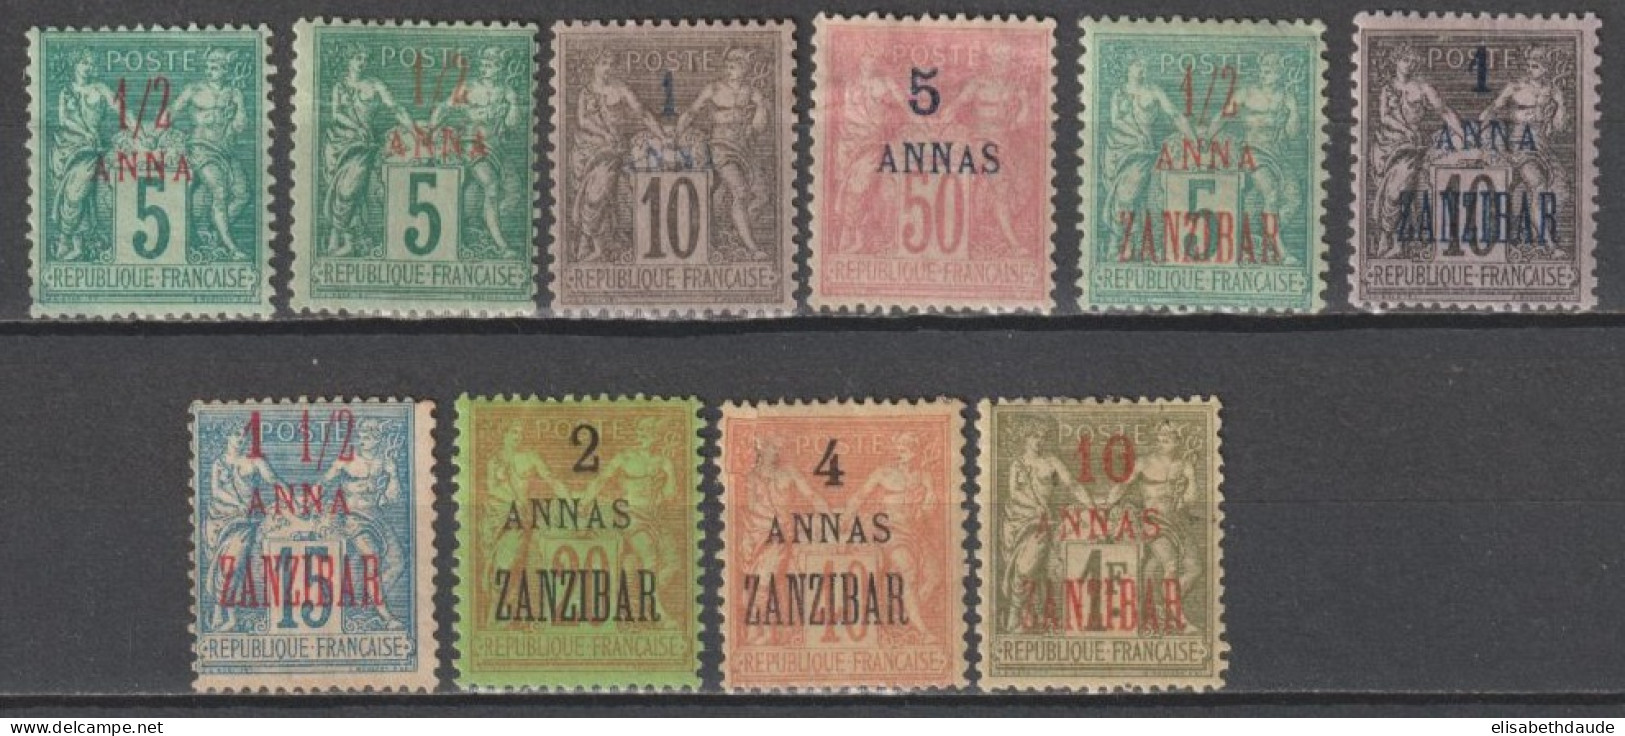 ZANZIBAR - 1894/1897 - TYPE SAGE - YVERT N° 1+1a+2A+8+17+21/23+26+29 * MH - COTE = 269 EUR. - Nuevos